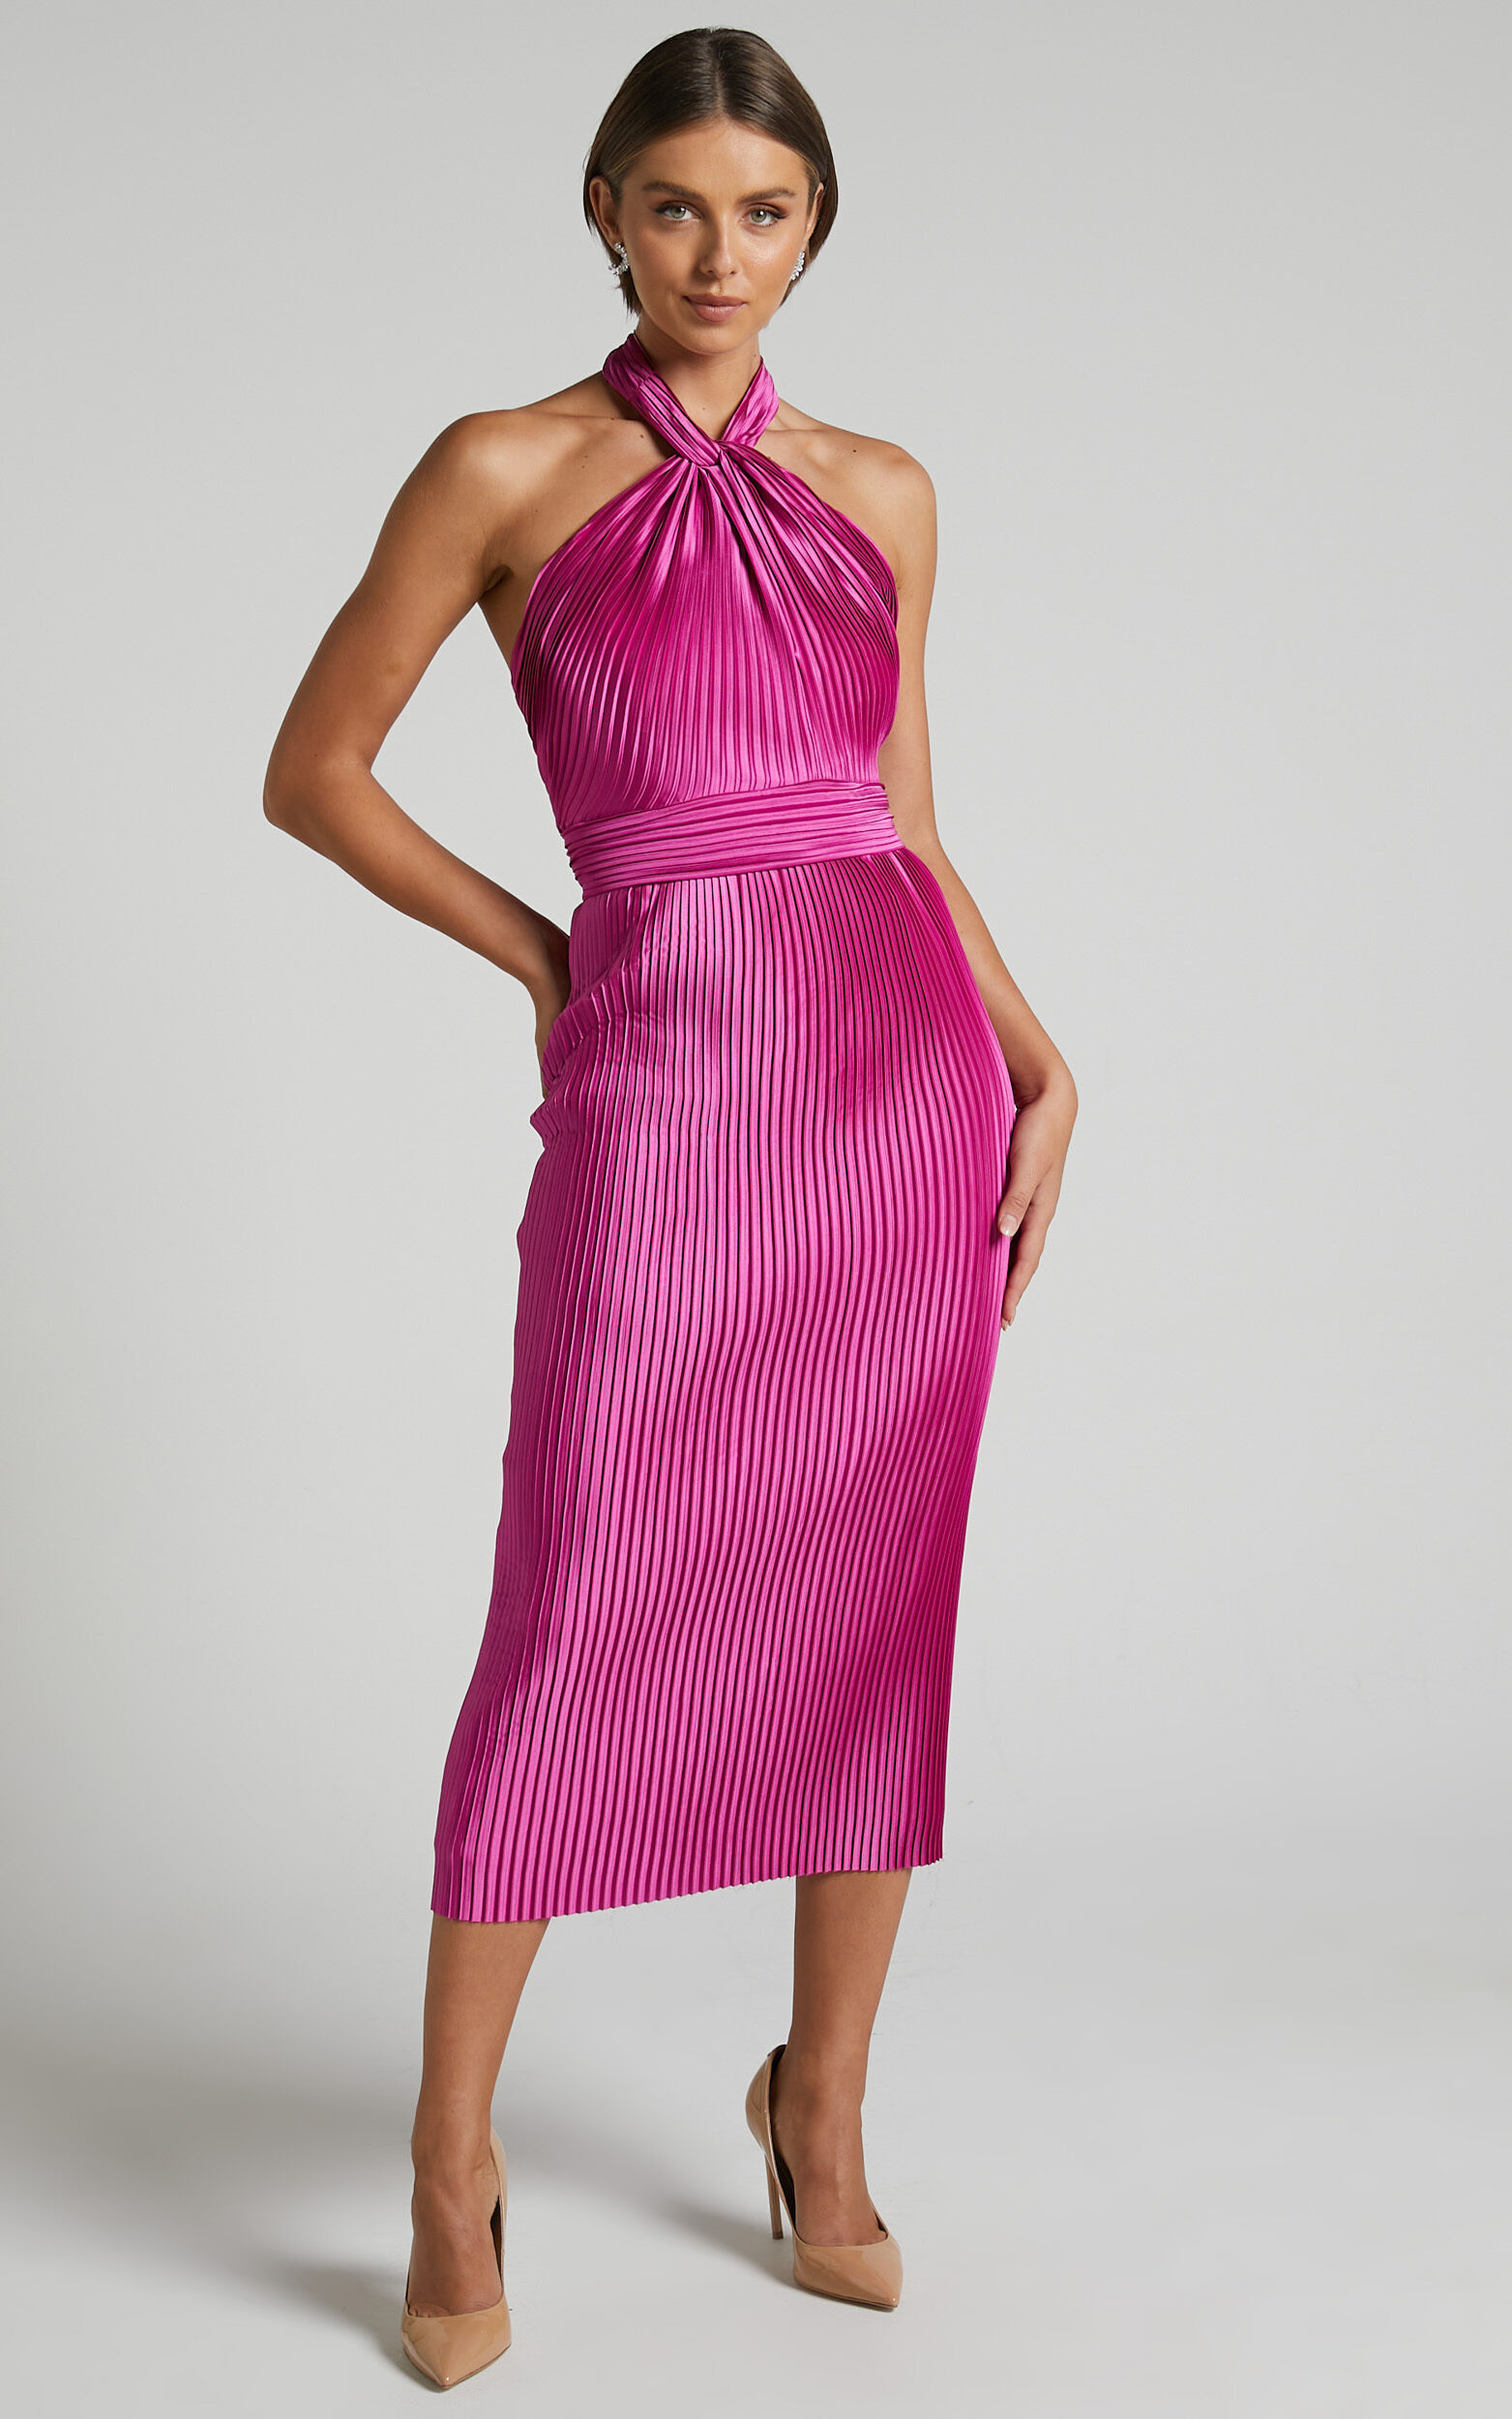 Marlette Midi Dress - Pleated Open Back Halter Dress in Grape - 04, PRP1, super-hi-res image number null